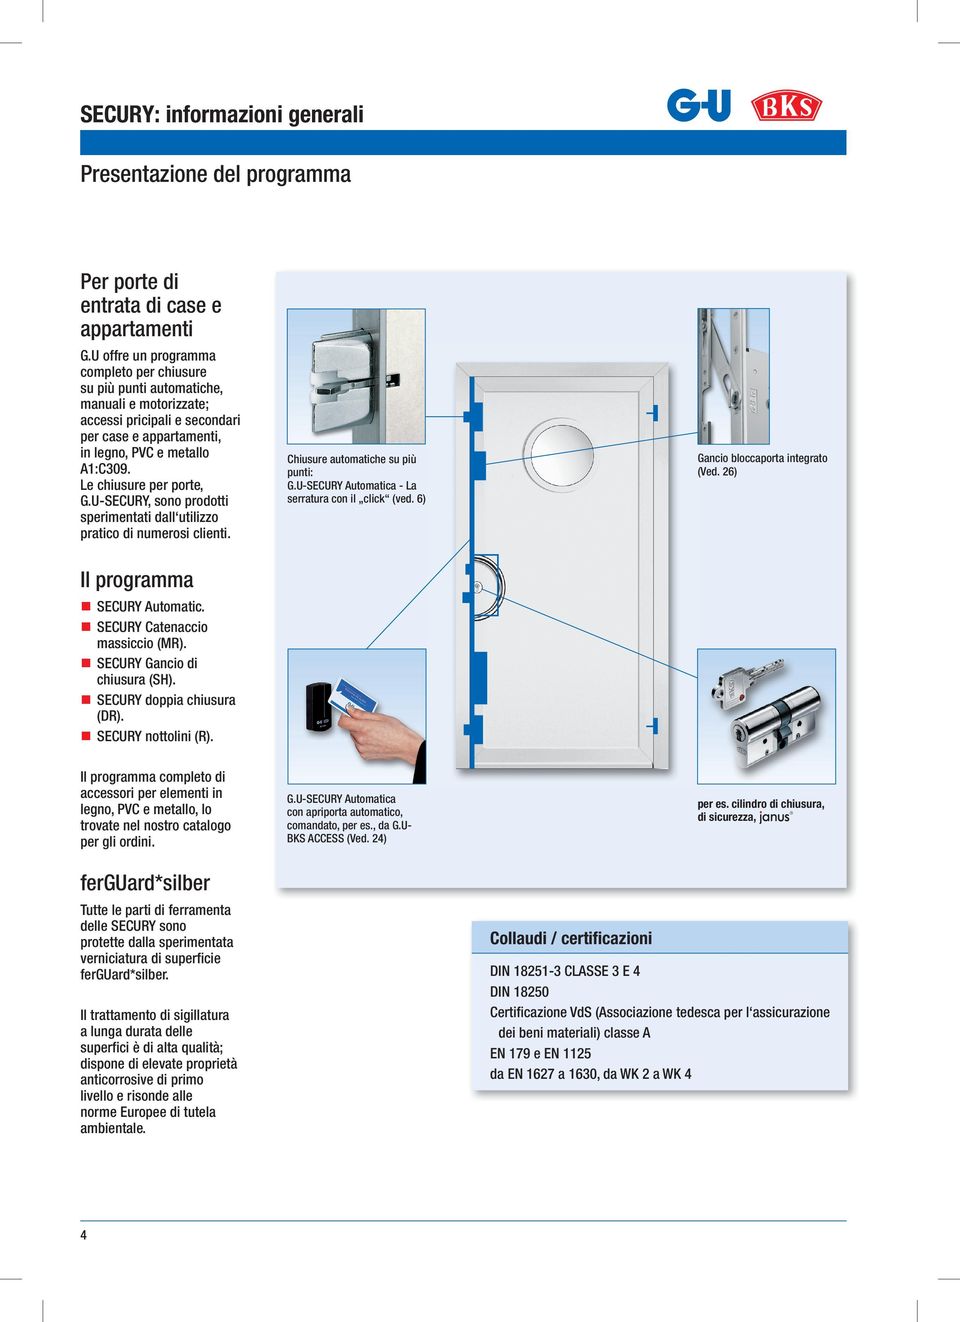 Le chiusure per porte, G.U-SECURY, sono prodotti sperimentati dall utilizzo pratico di numerosi clienti. Il programma SECURY Automatic. SECURY Catenaccio massiccio (MR).